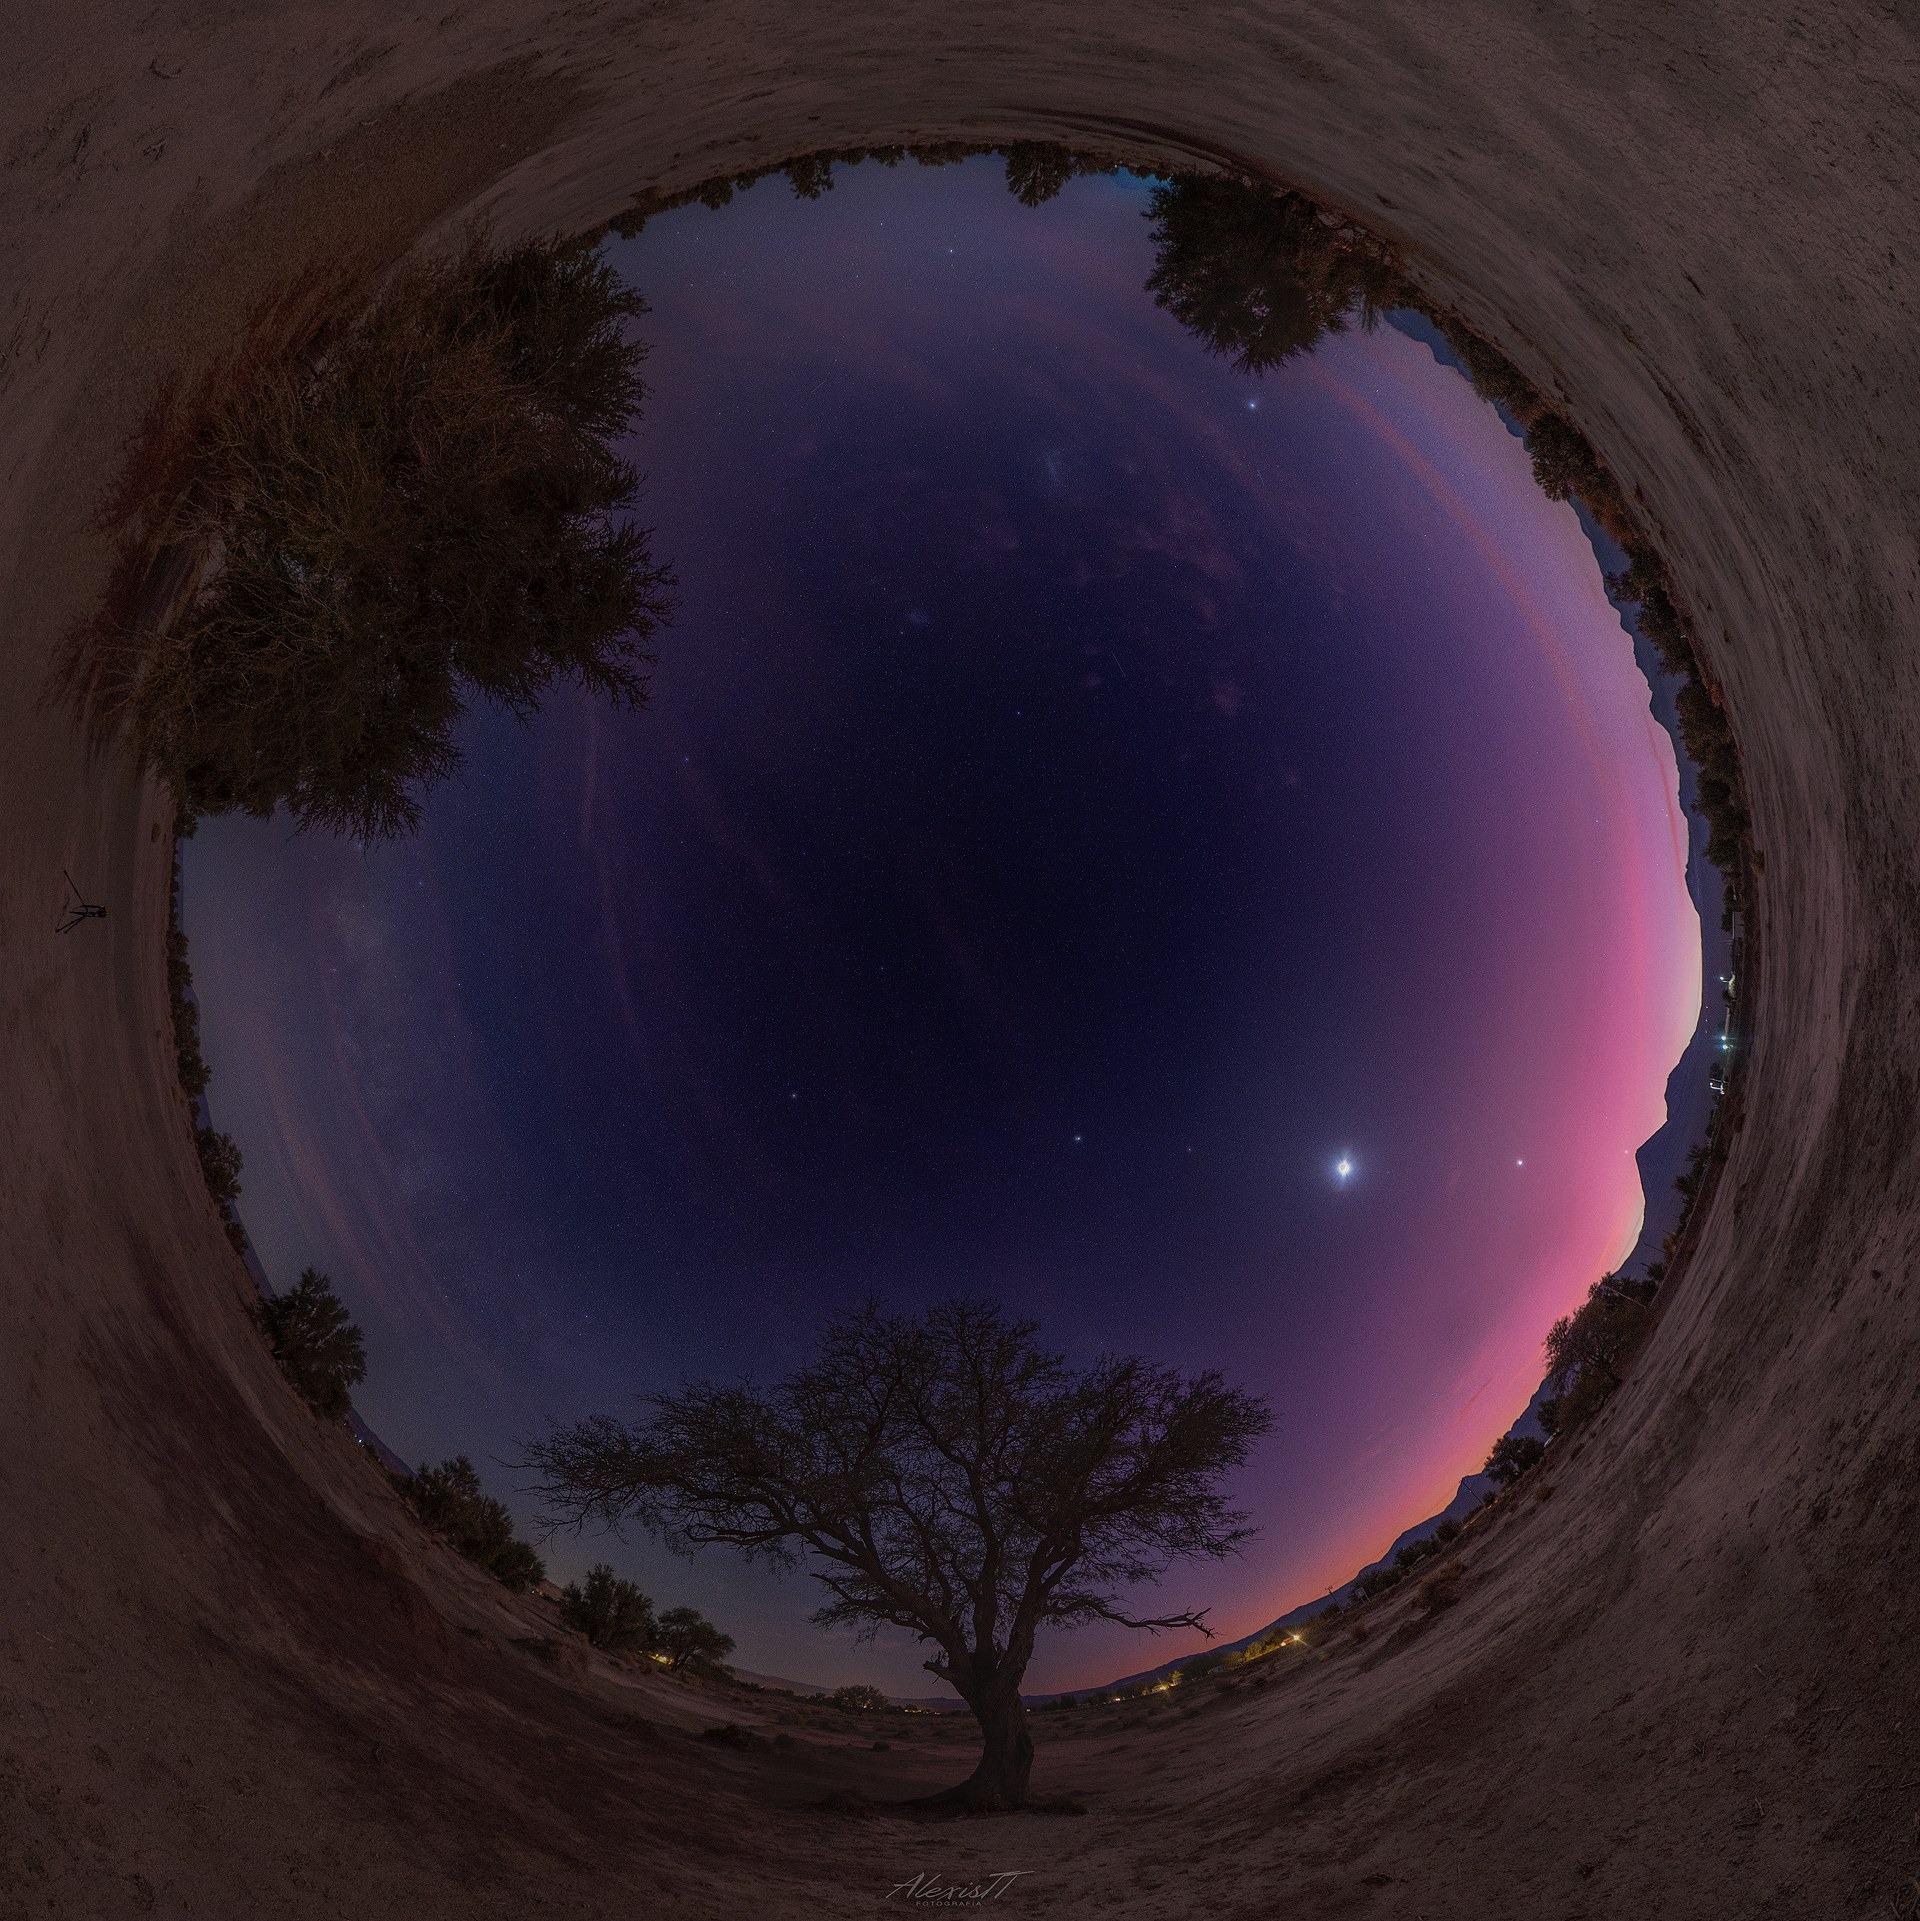 صورة بانوراميّة بتقنيّة عين السمكة يظهر فيها الأفق مكوّراً مغلقاً وفي المنتصف السماء وفيها موكب الكواكب مع بعض الأشجار على الجوانب